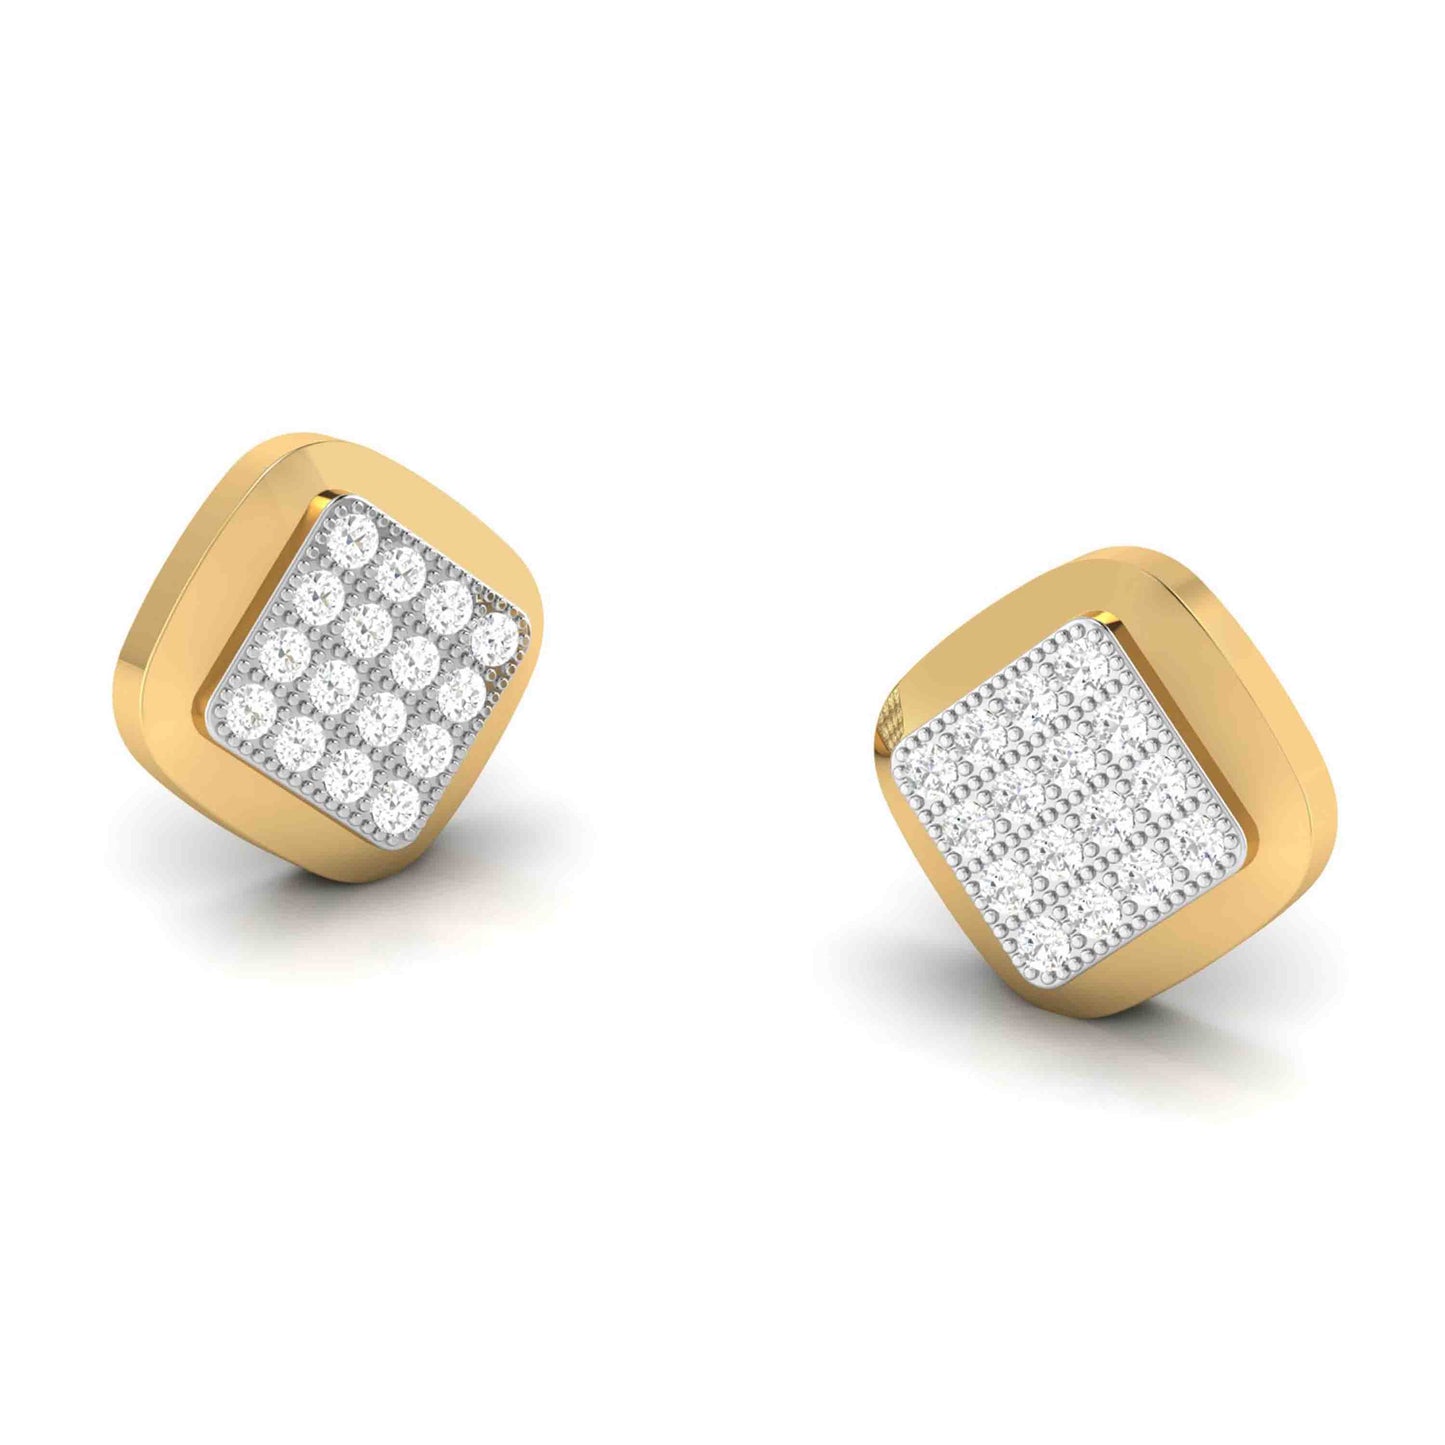 Fancy earrings design Classy 16 Lab Grown Diamond Earrings Fiona Diamonds